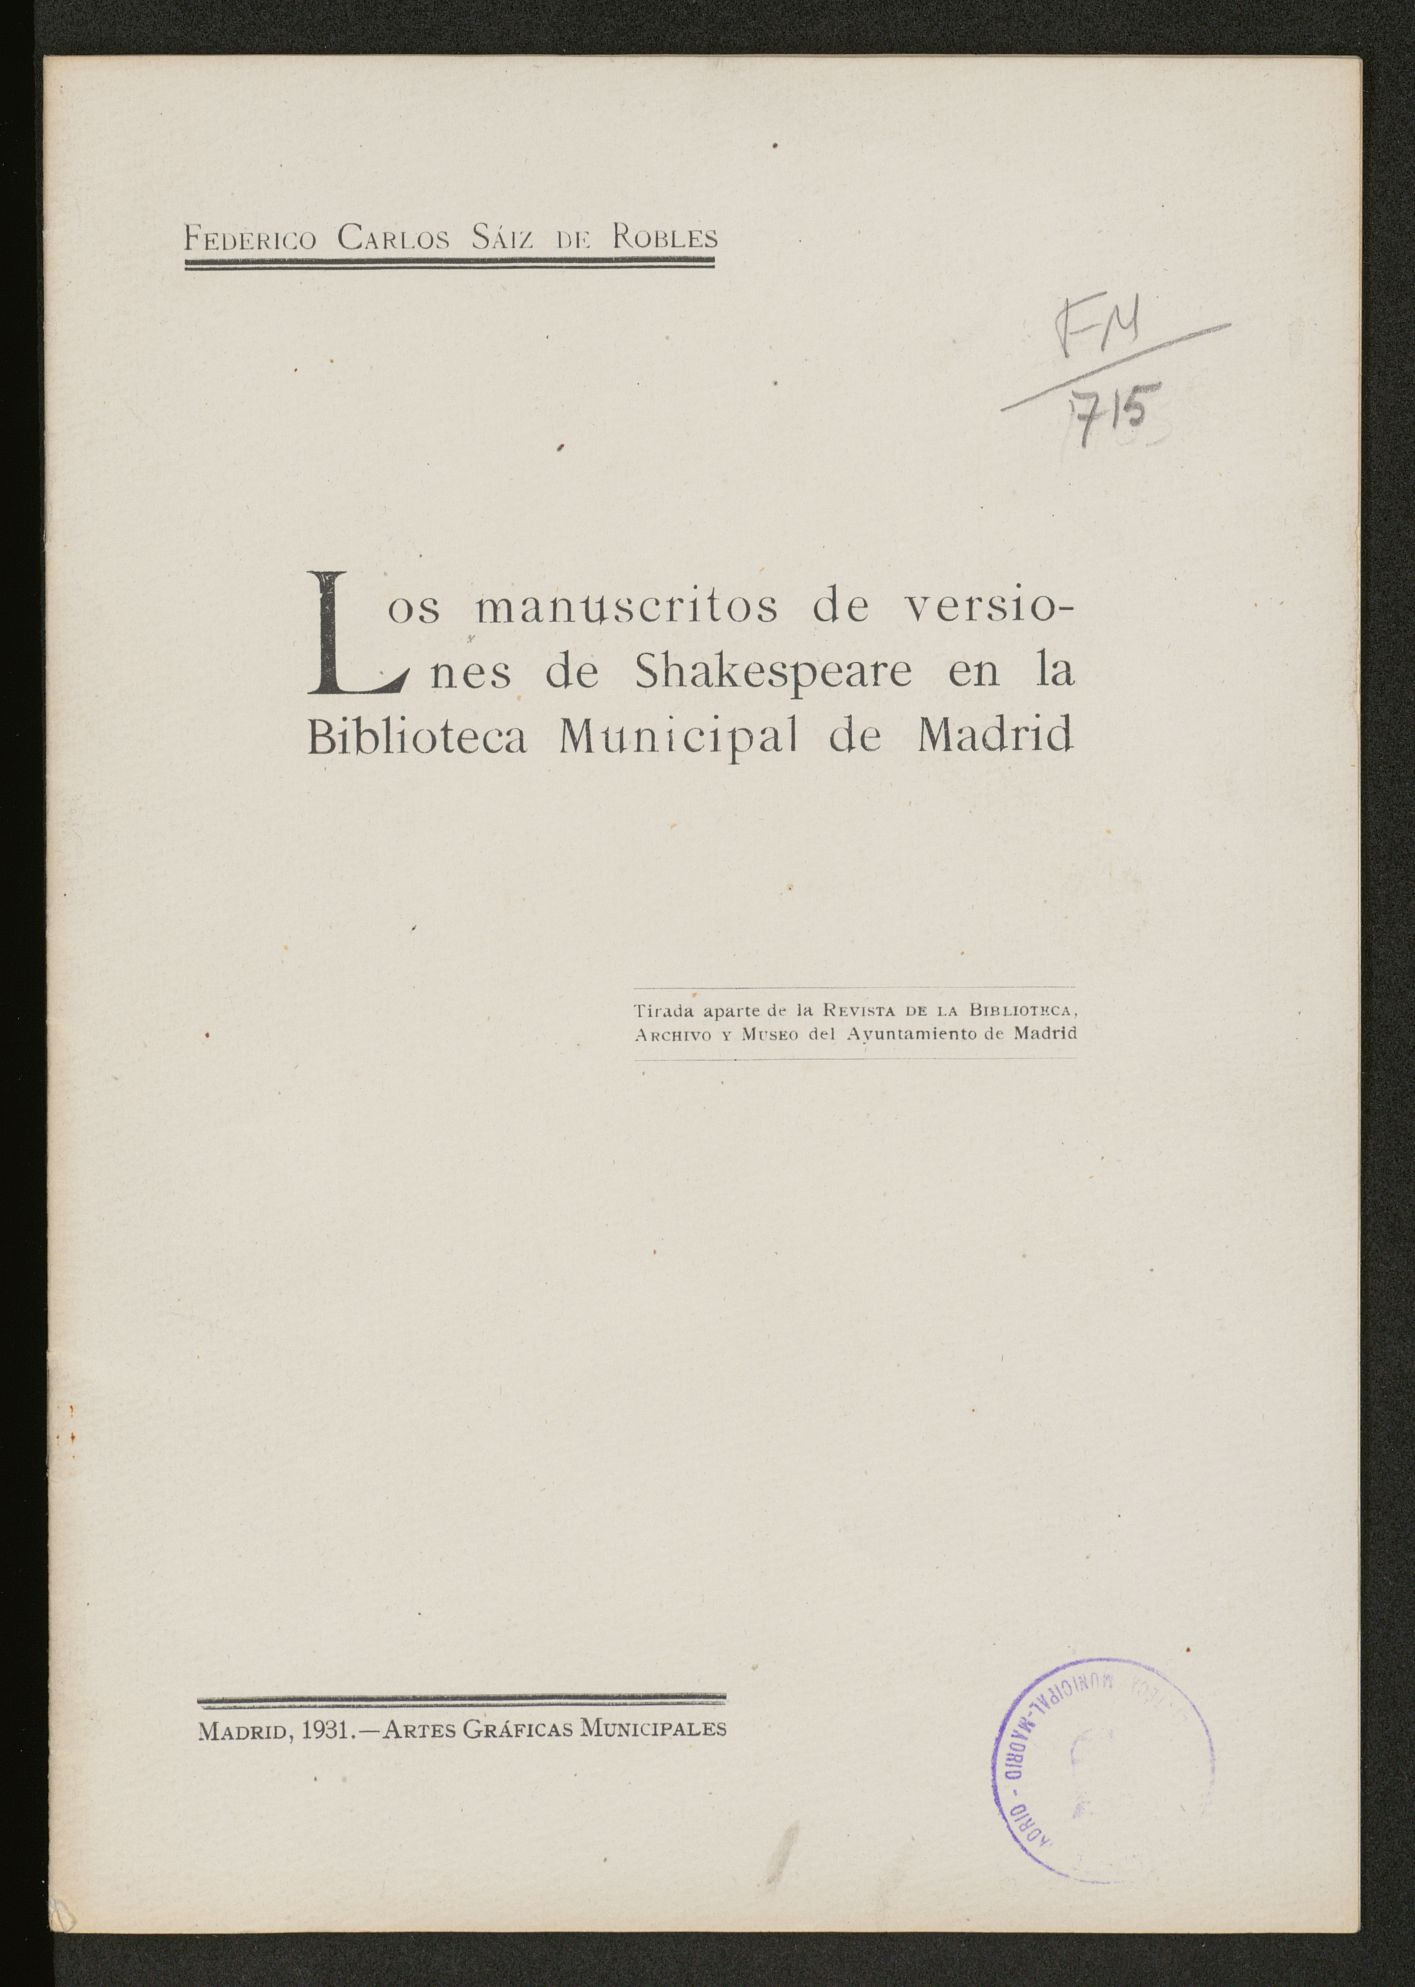 Los manuscritos de versiones de Shakespeare en la Biblioteca Municipal de Madrid